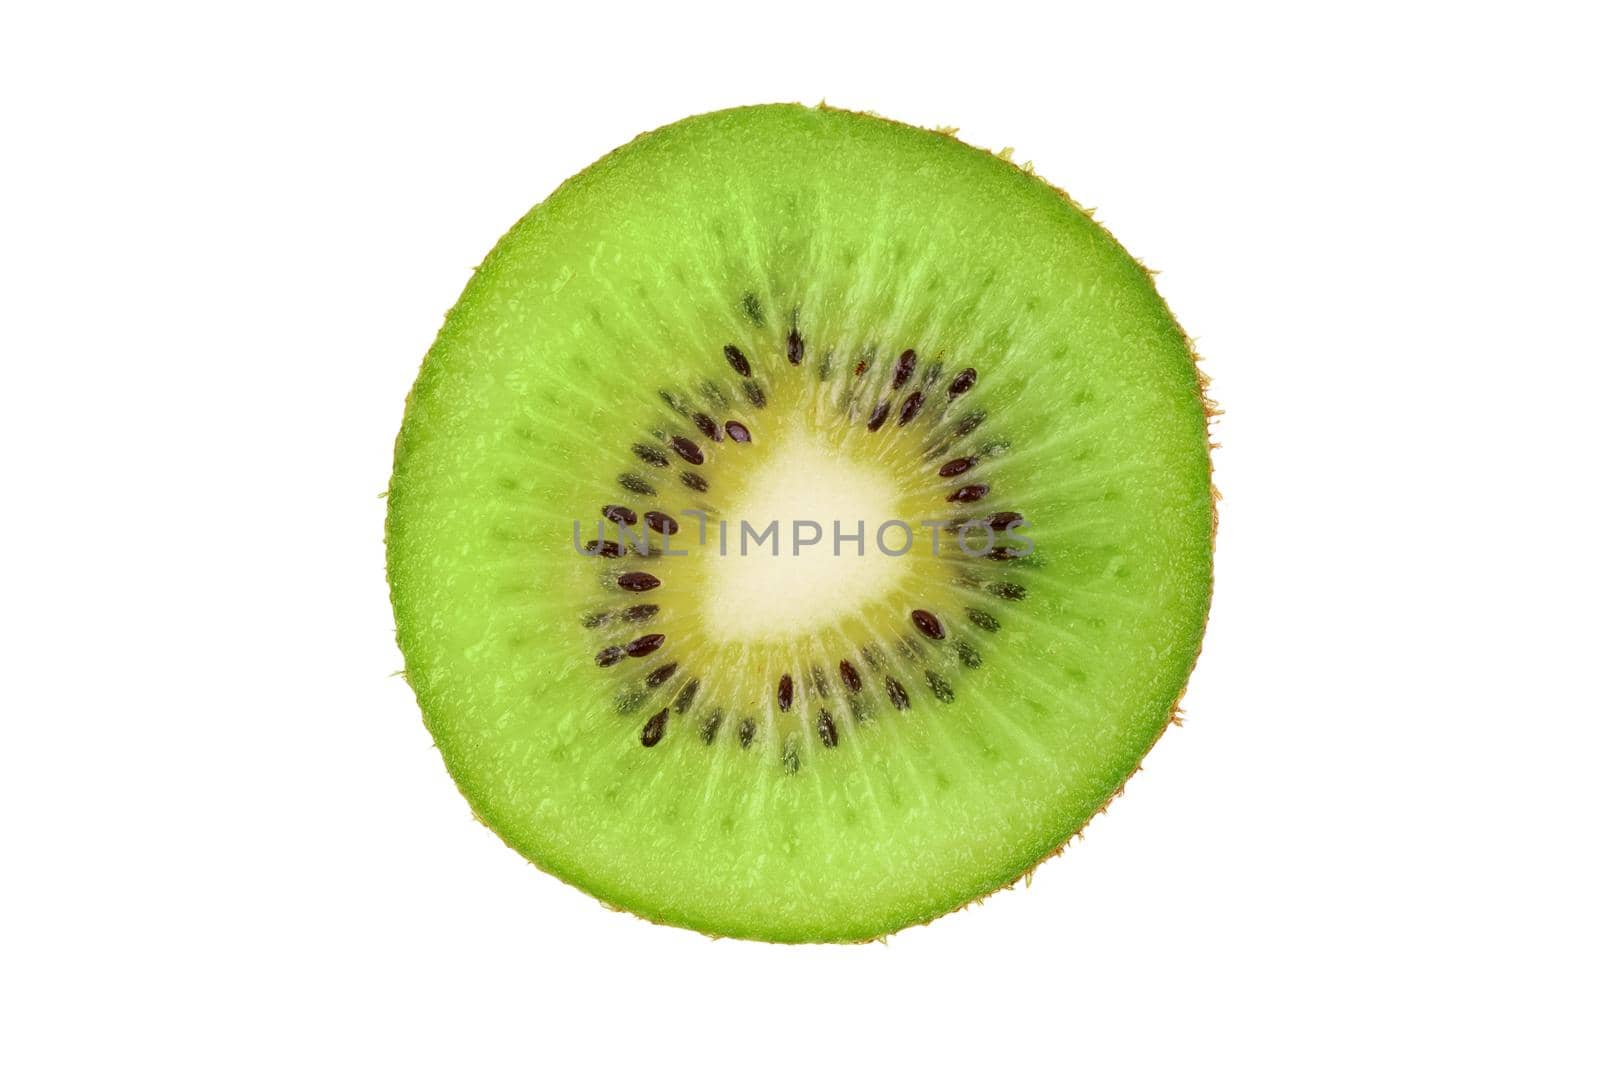 Ripe fresh juicy single qiwi fruit close up. Closeup slice of one green kiwi fruit isolated on white background. Macro, studio shot.